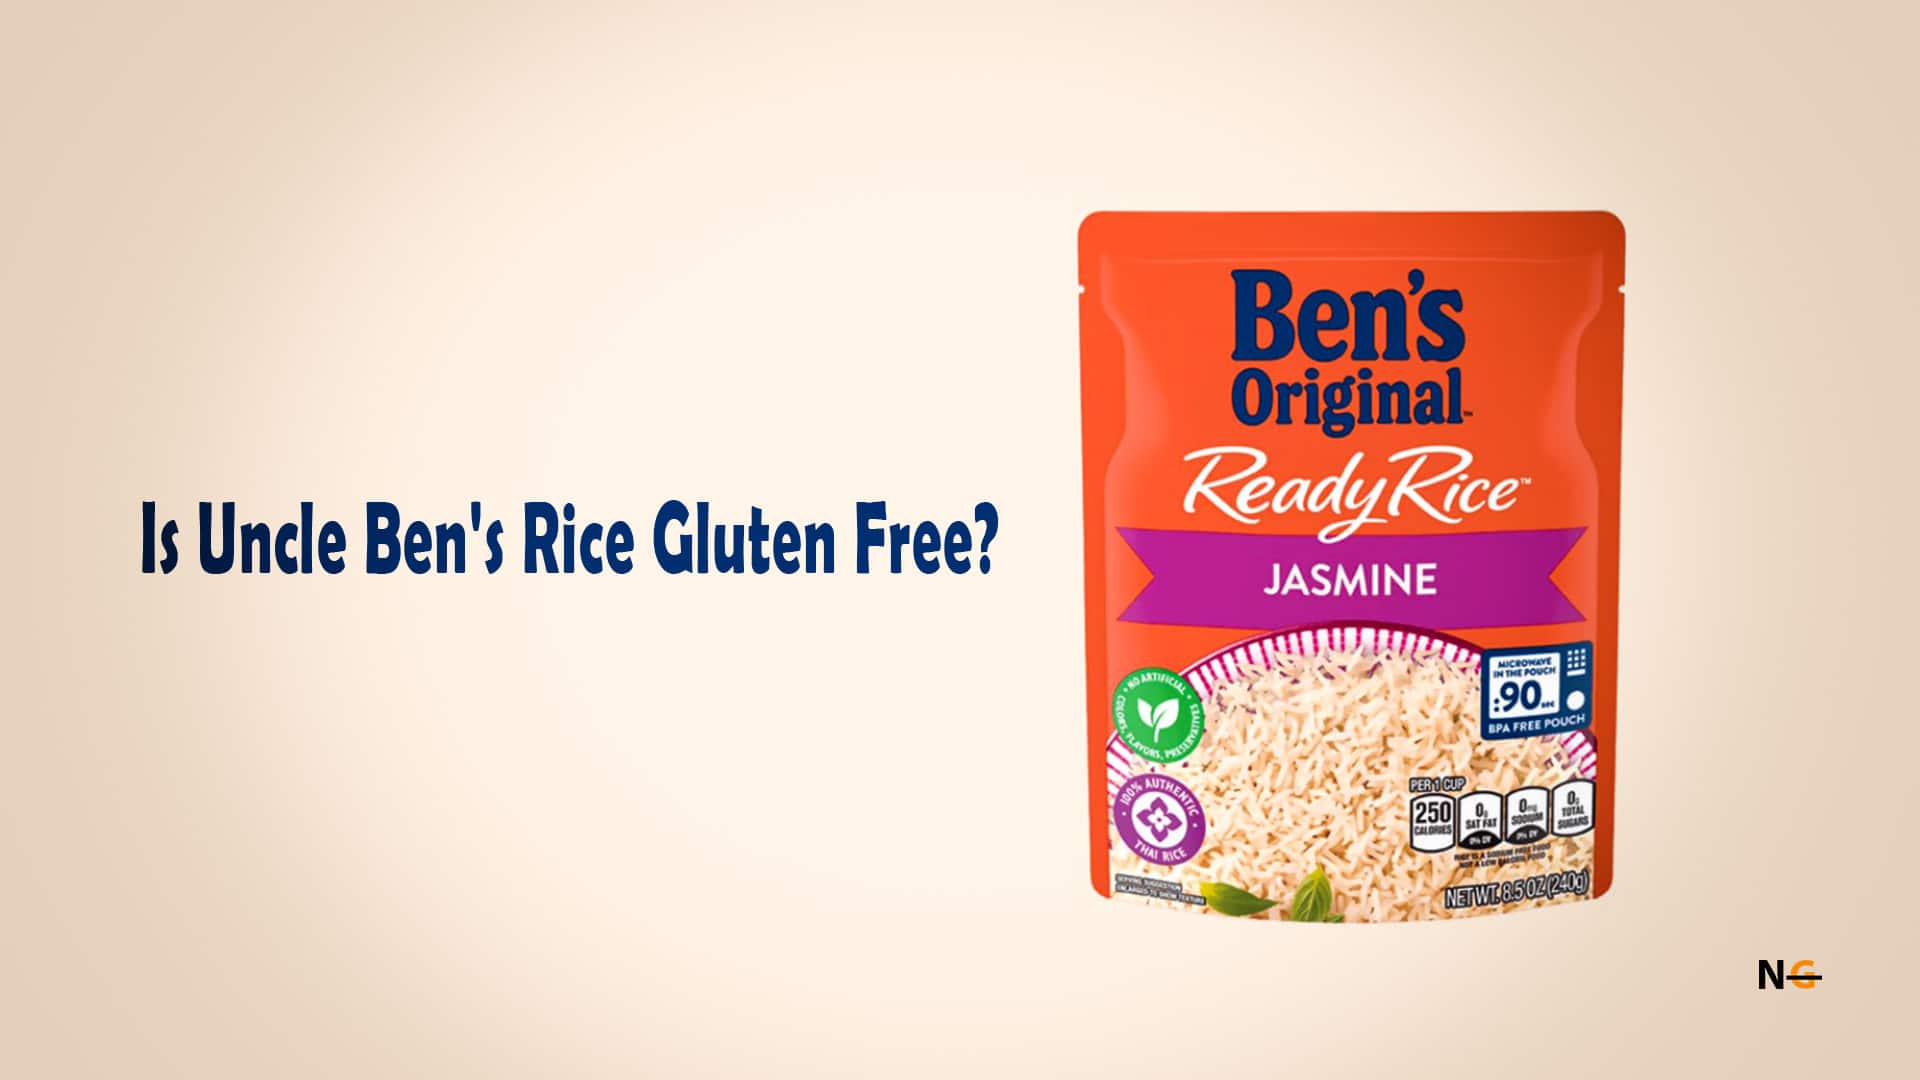  Is Uncle Ben's Rice Gluten